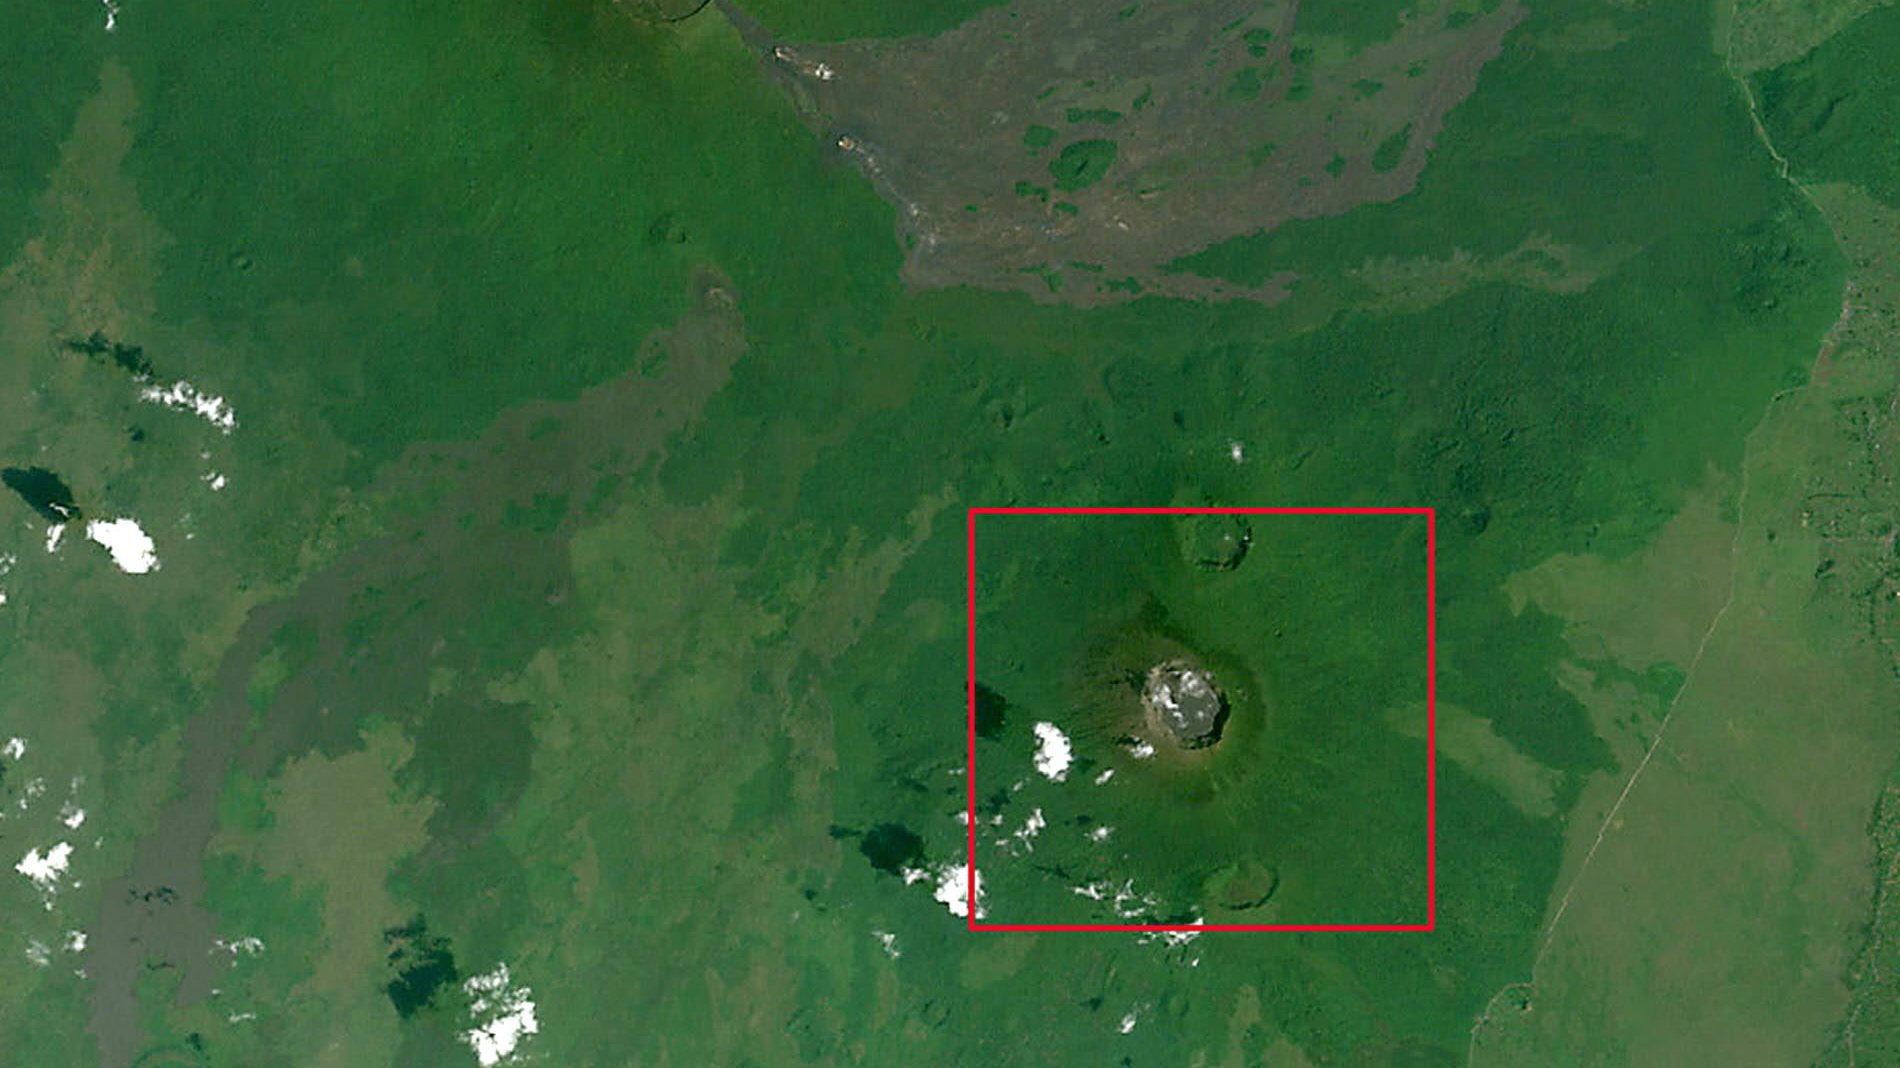 A anterior erupção de Nyamuragira foi em 2011 e o vulcão tem vindo a ter atividade interna desde 2014